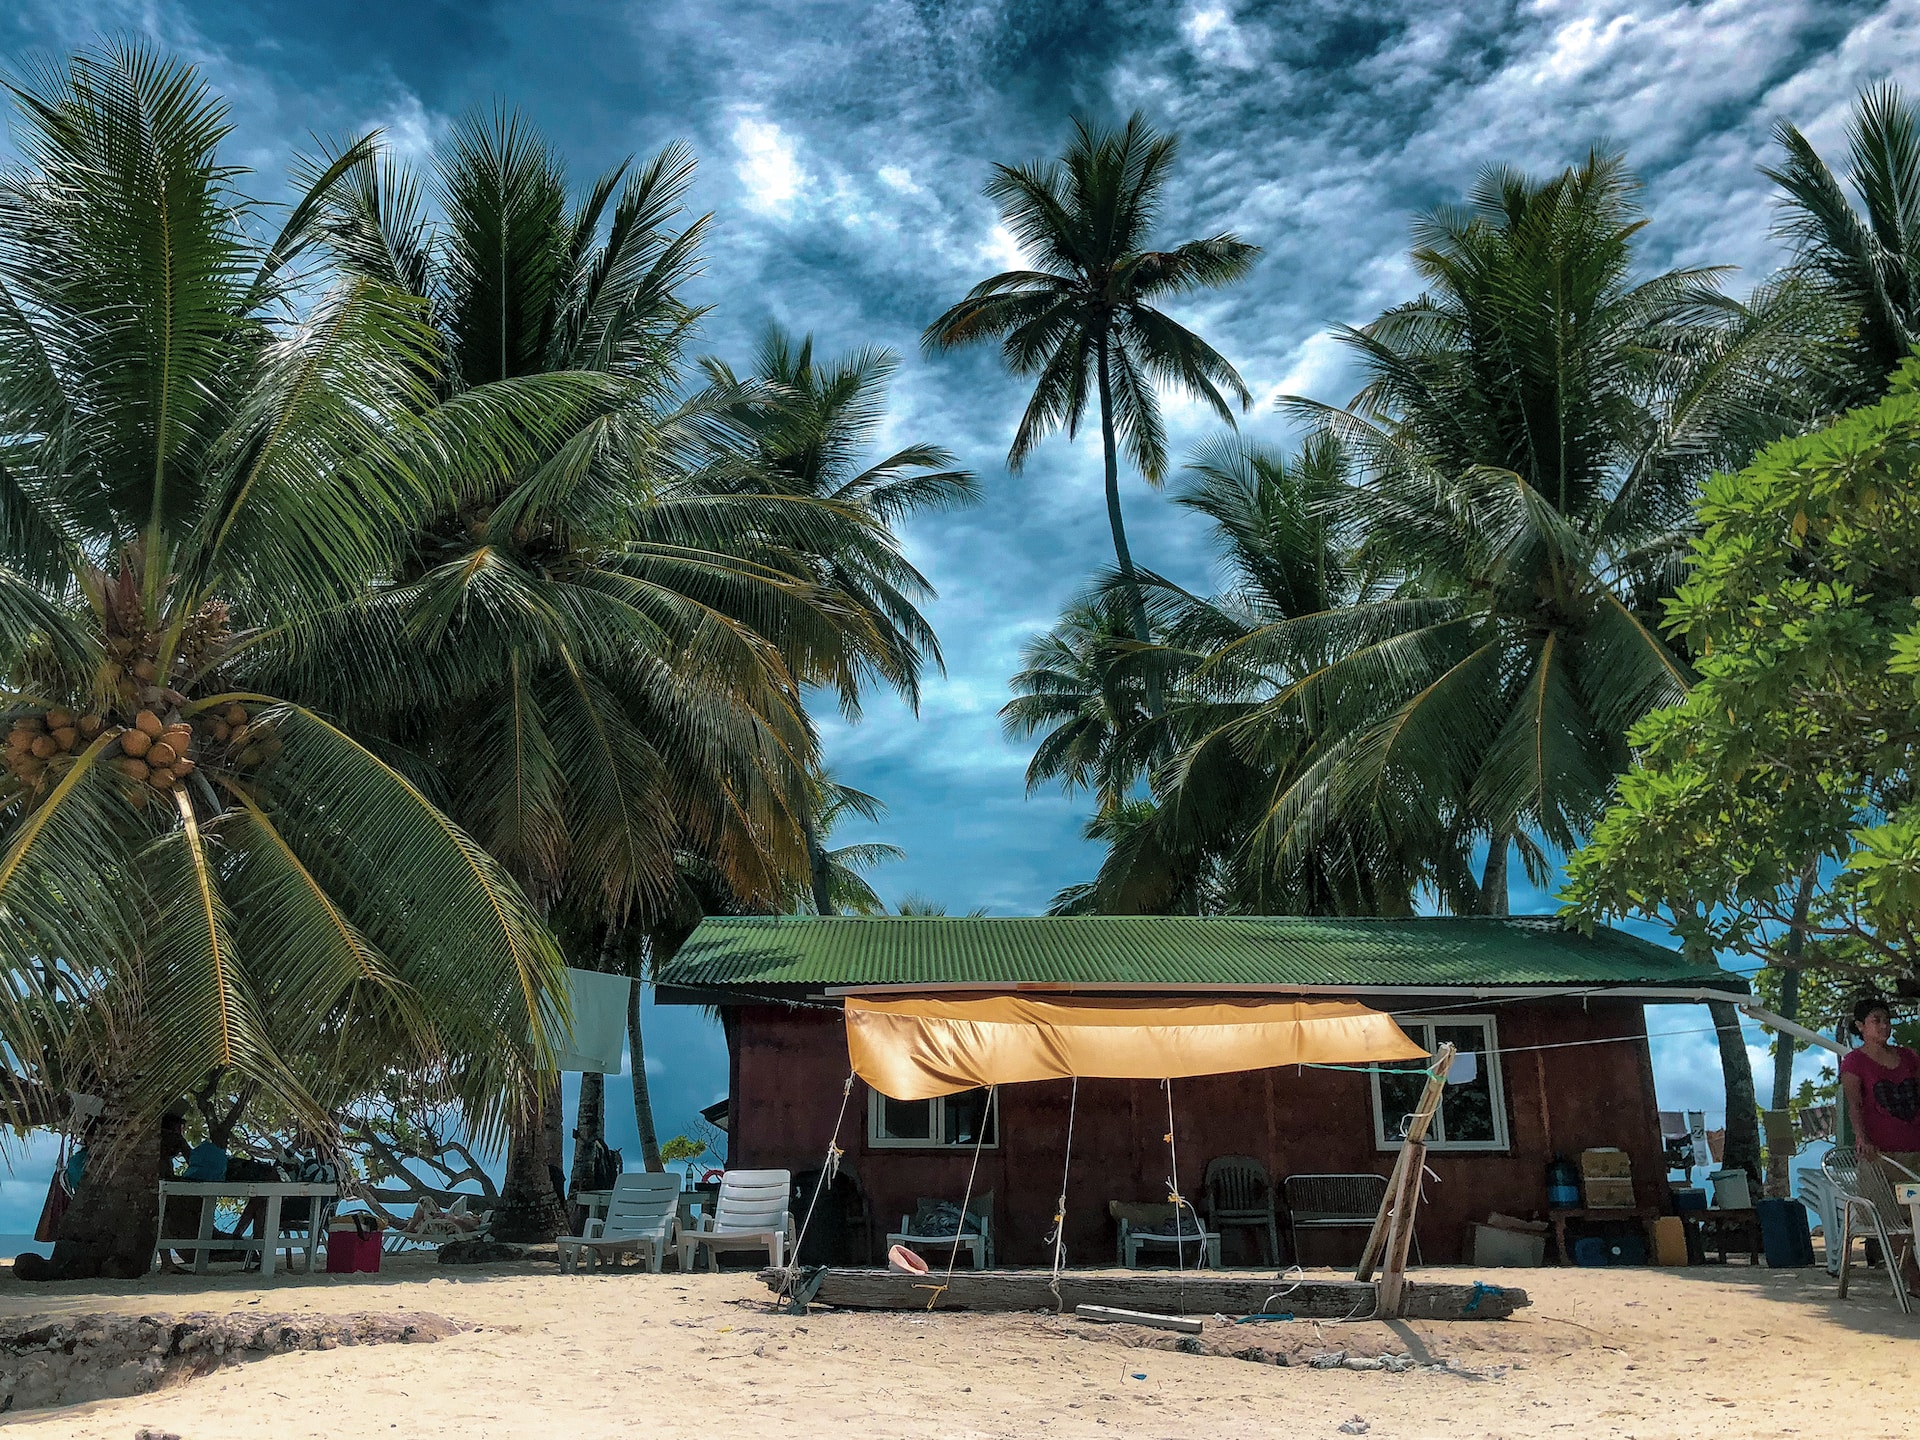 Major reasons why visas in Micronesia get denied